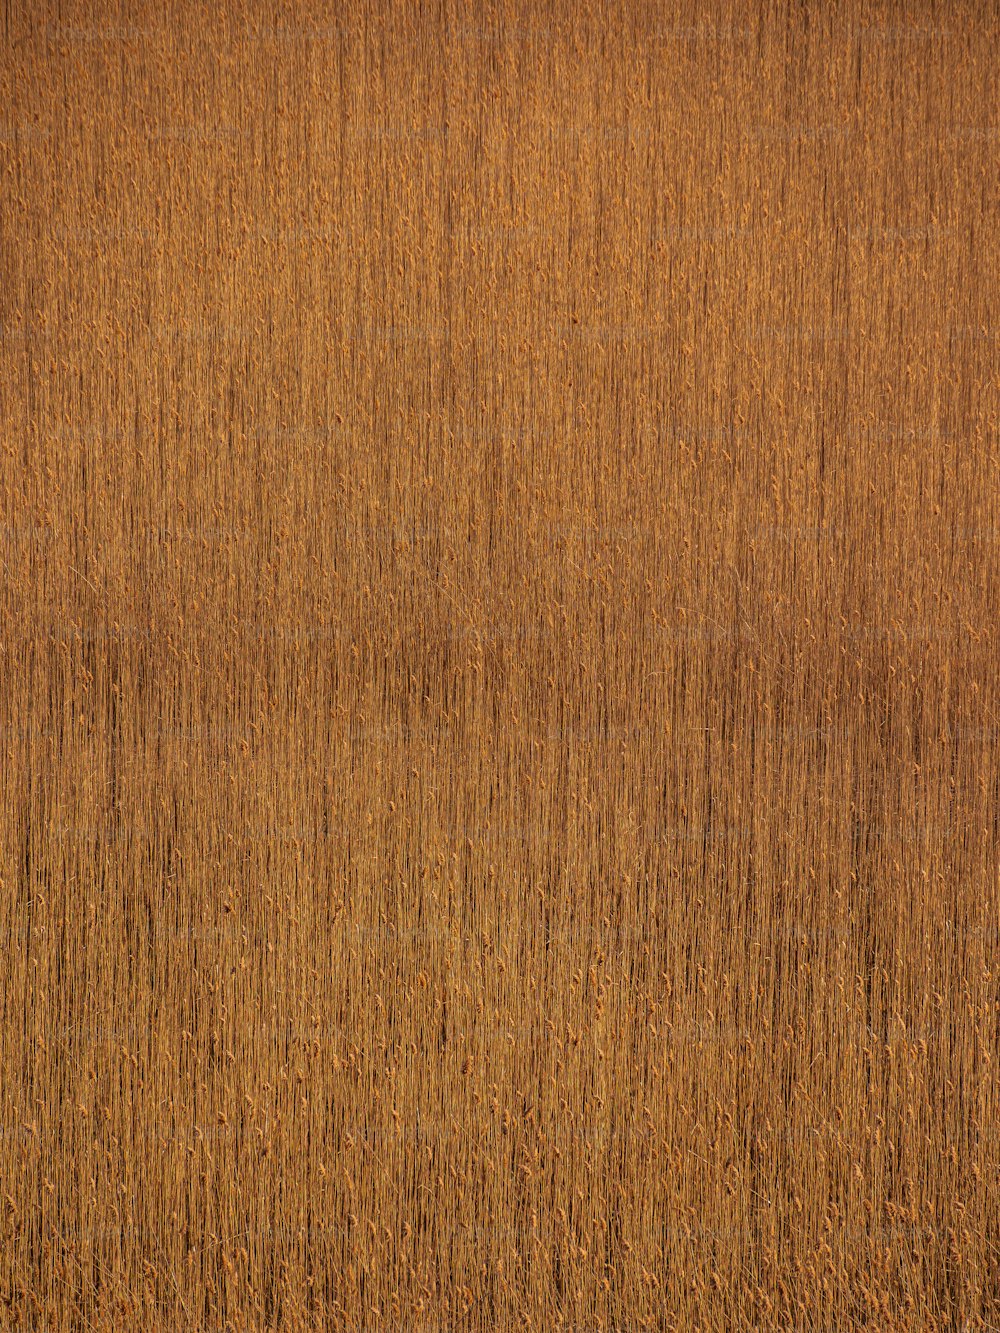 une surface en bois de couleur brune